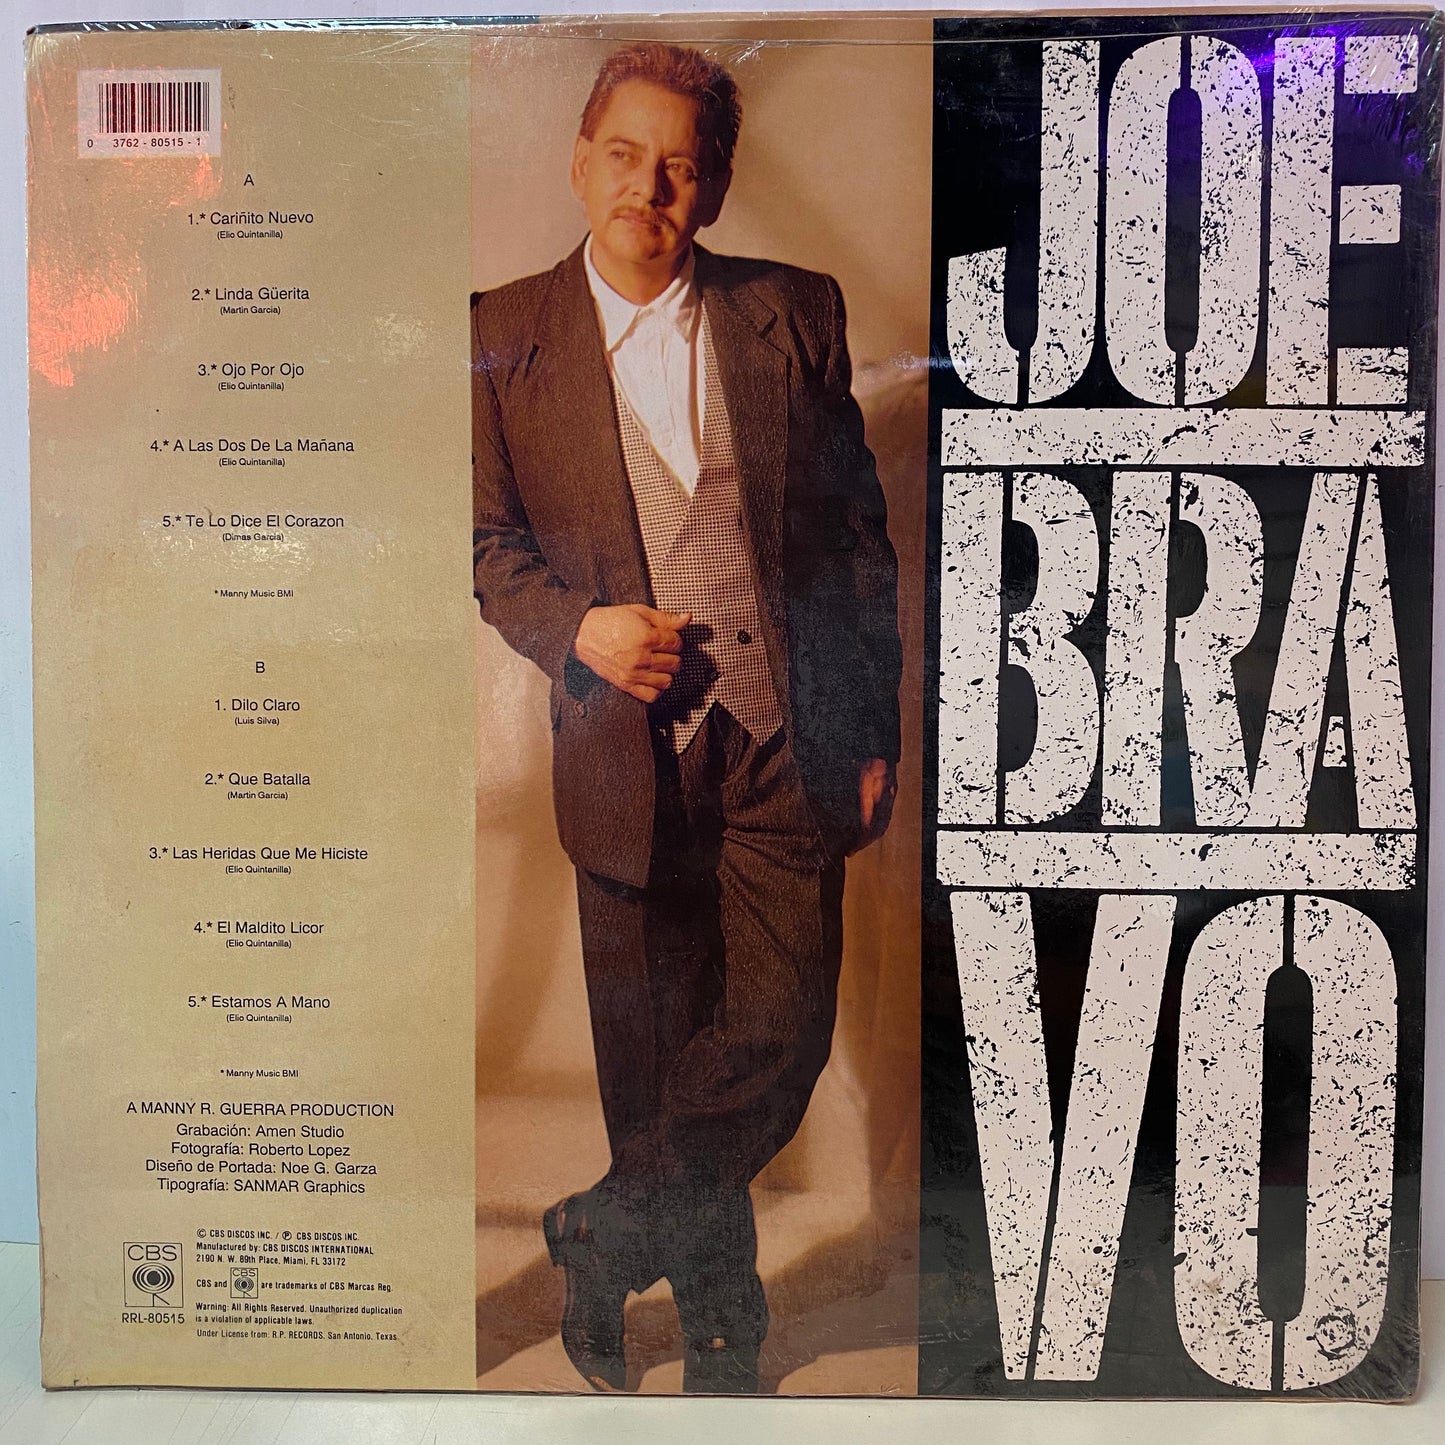 Joe Bravo - Joe Bravo (Vinilo)